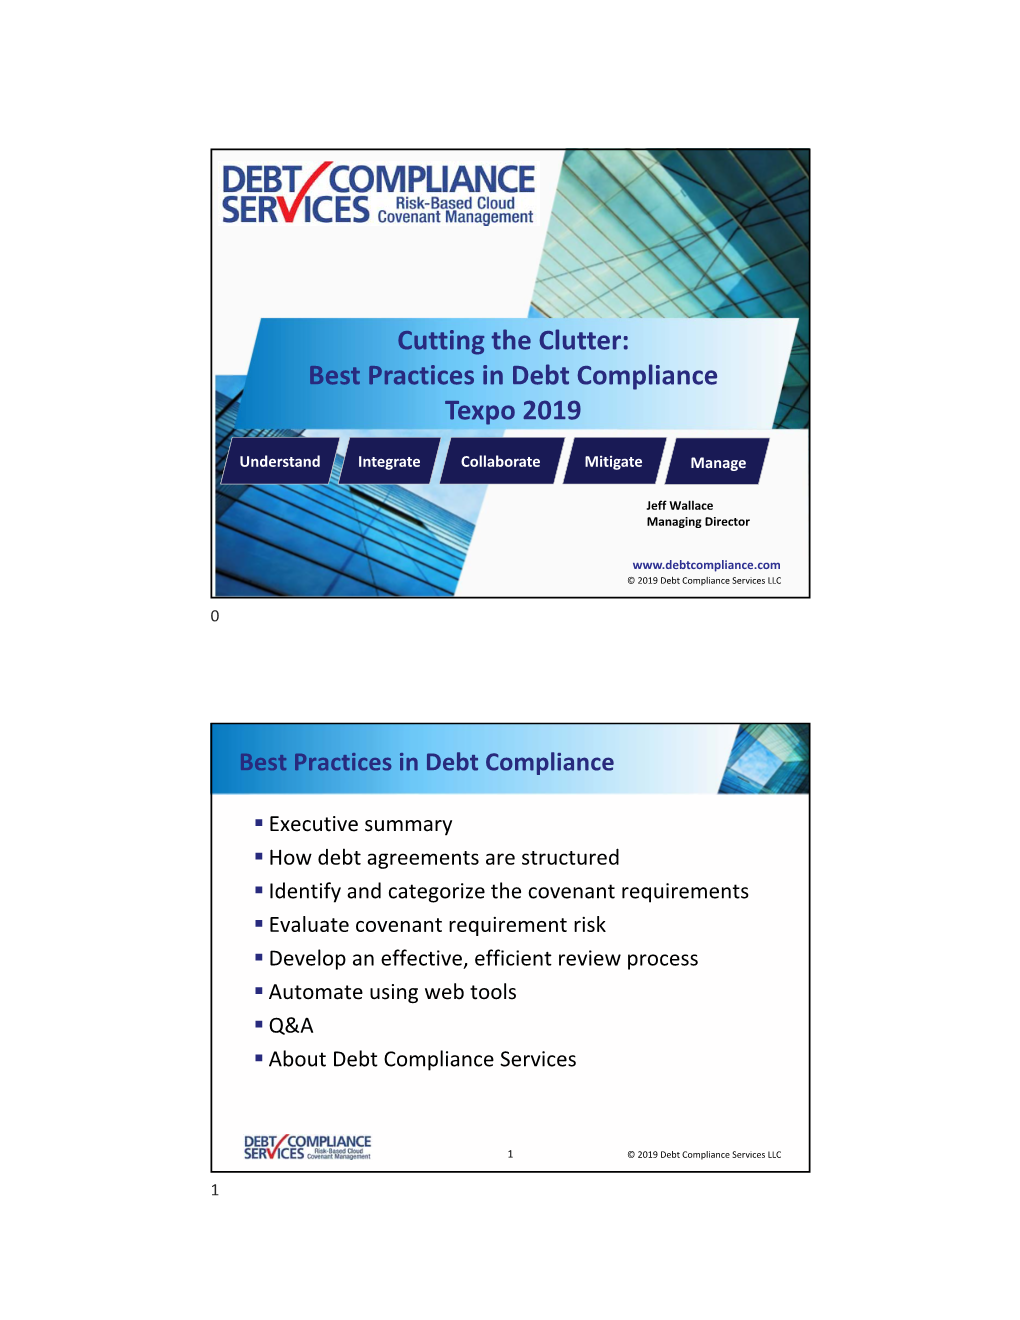 Best Practices in Debt Compliance Texpo 2019